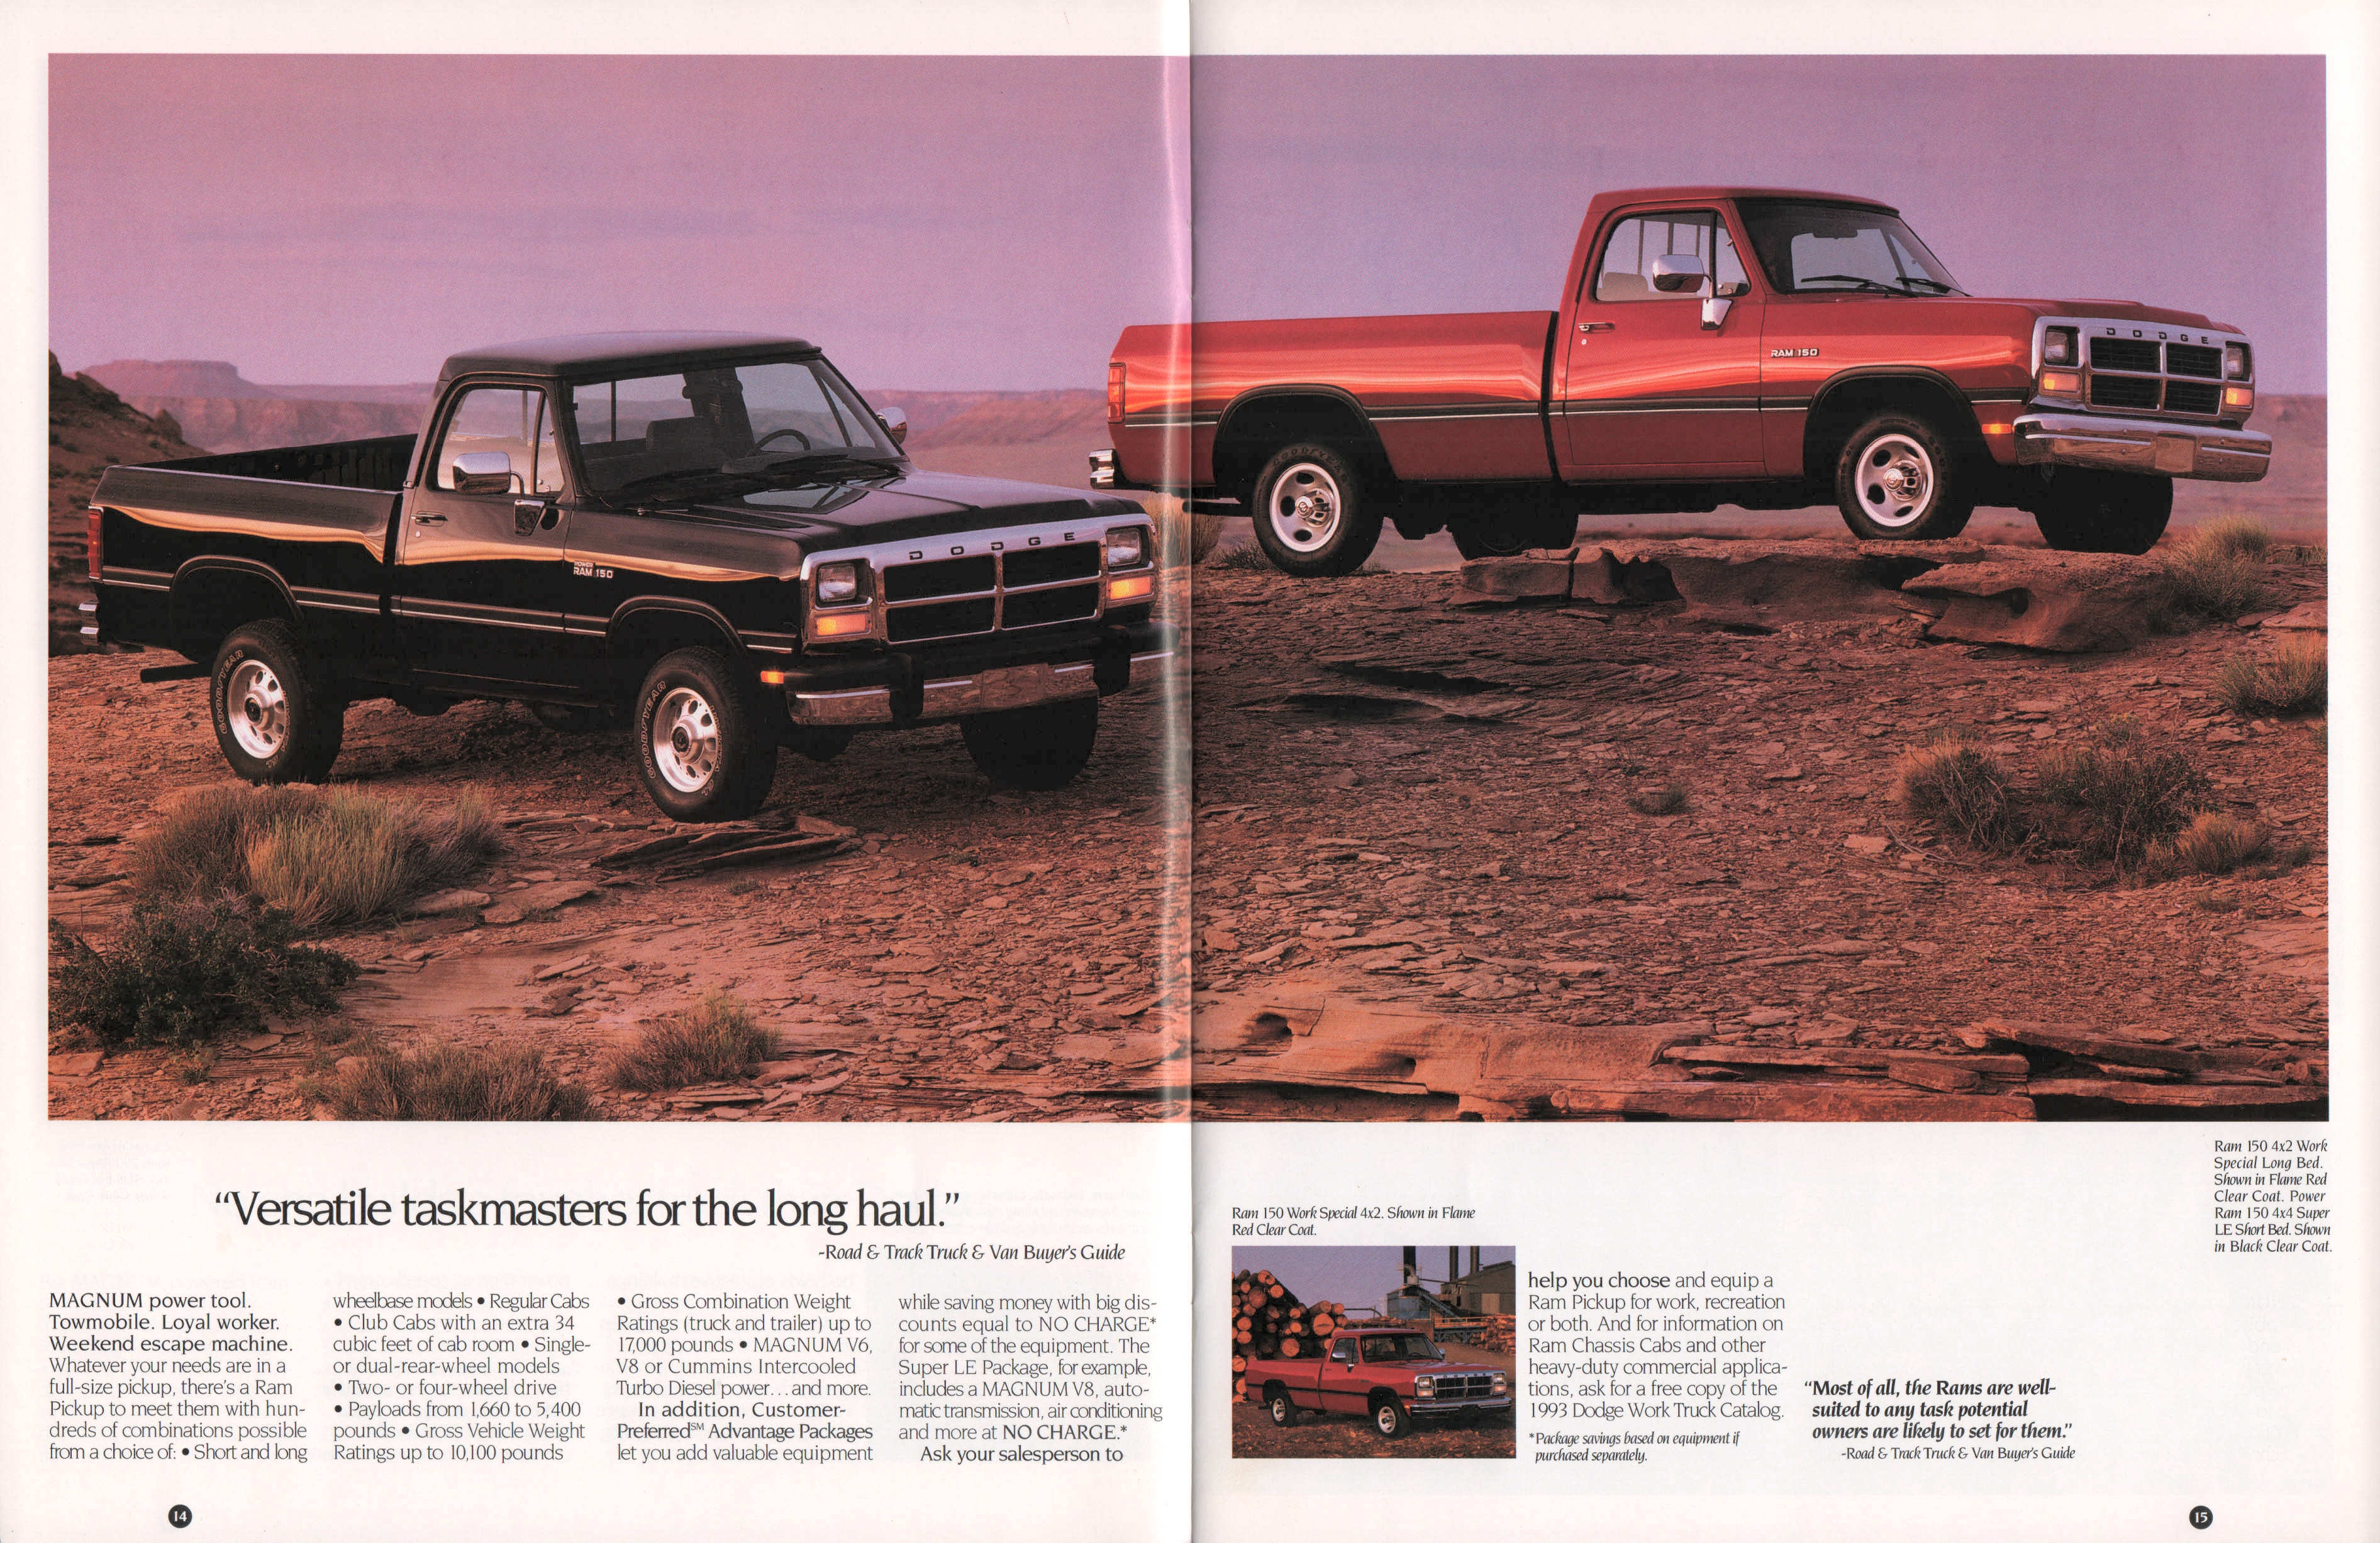 1993_Dodge_Pickup_Prestige-14-15